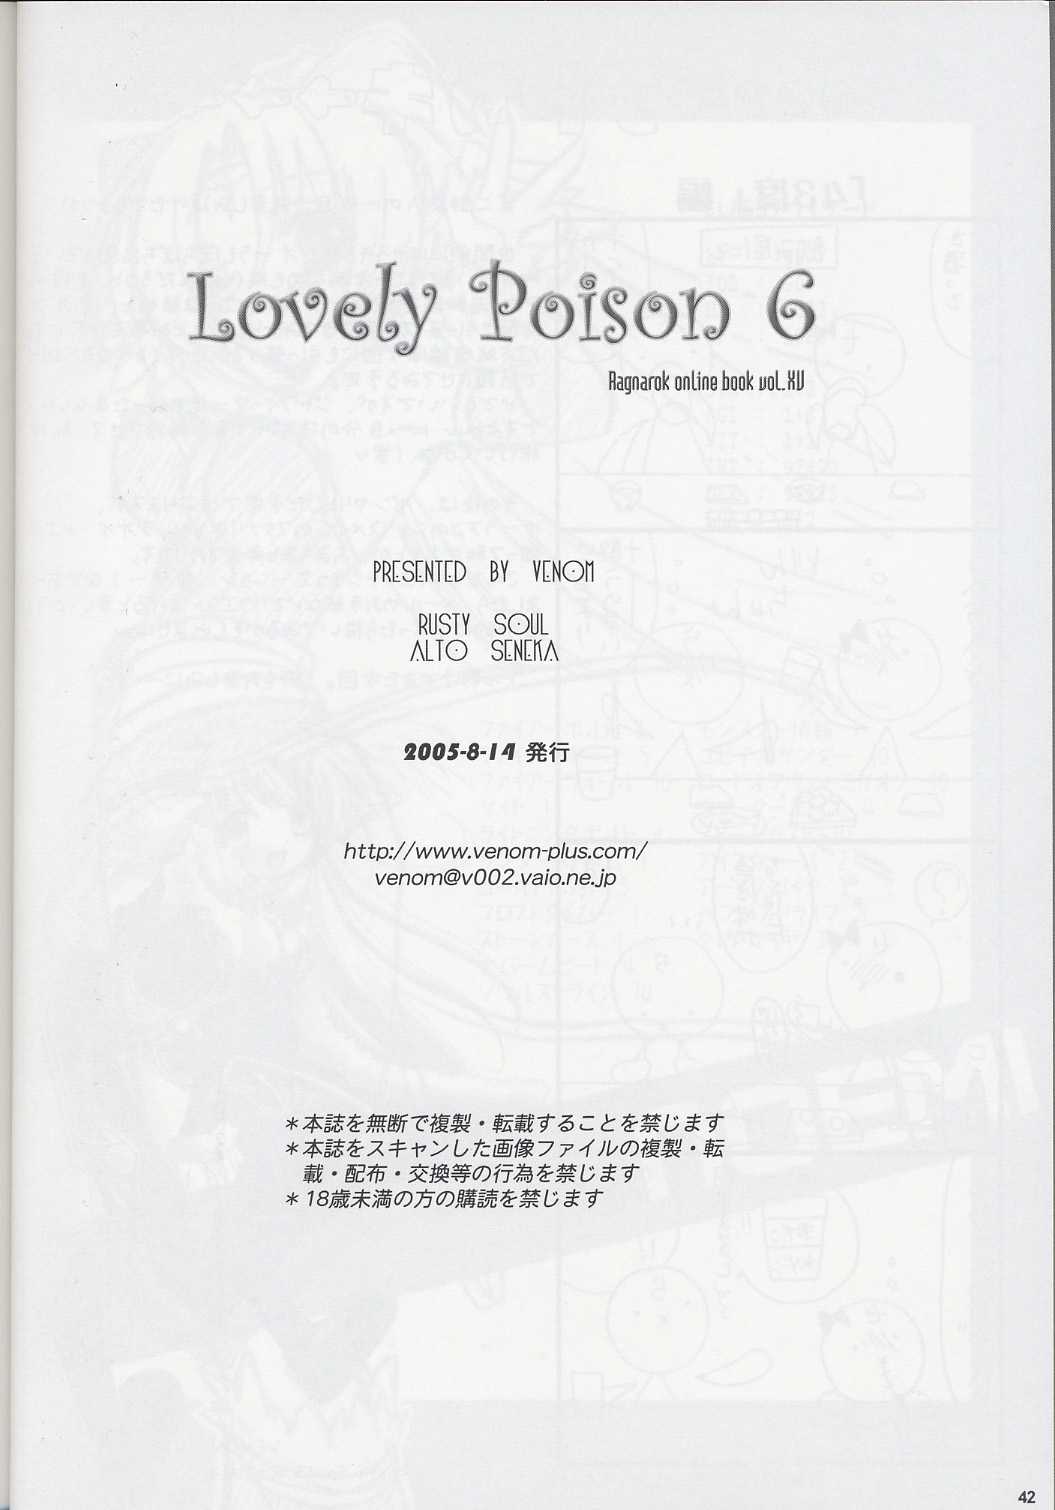 [VENOM] Lovely Poison 6 